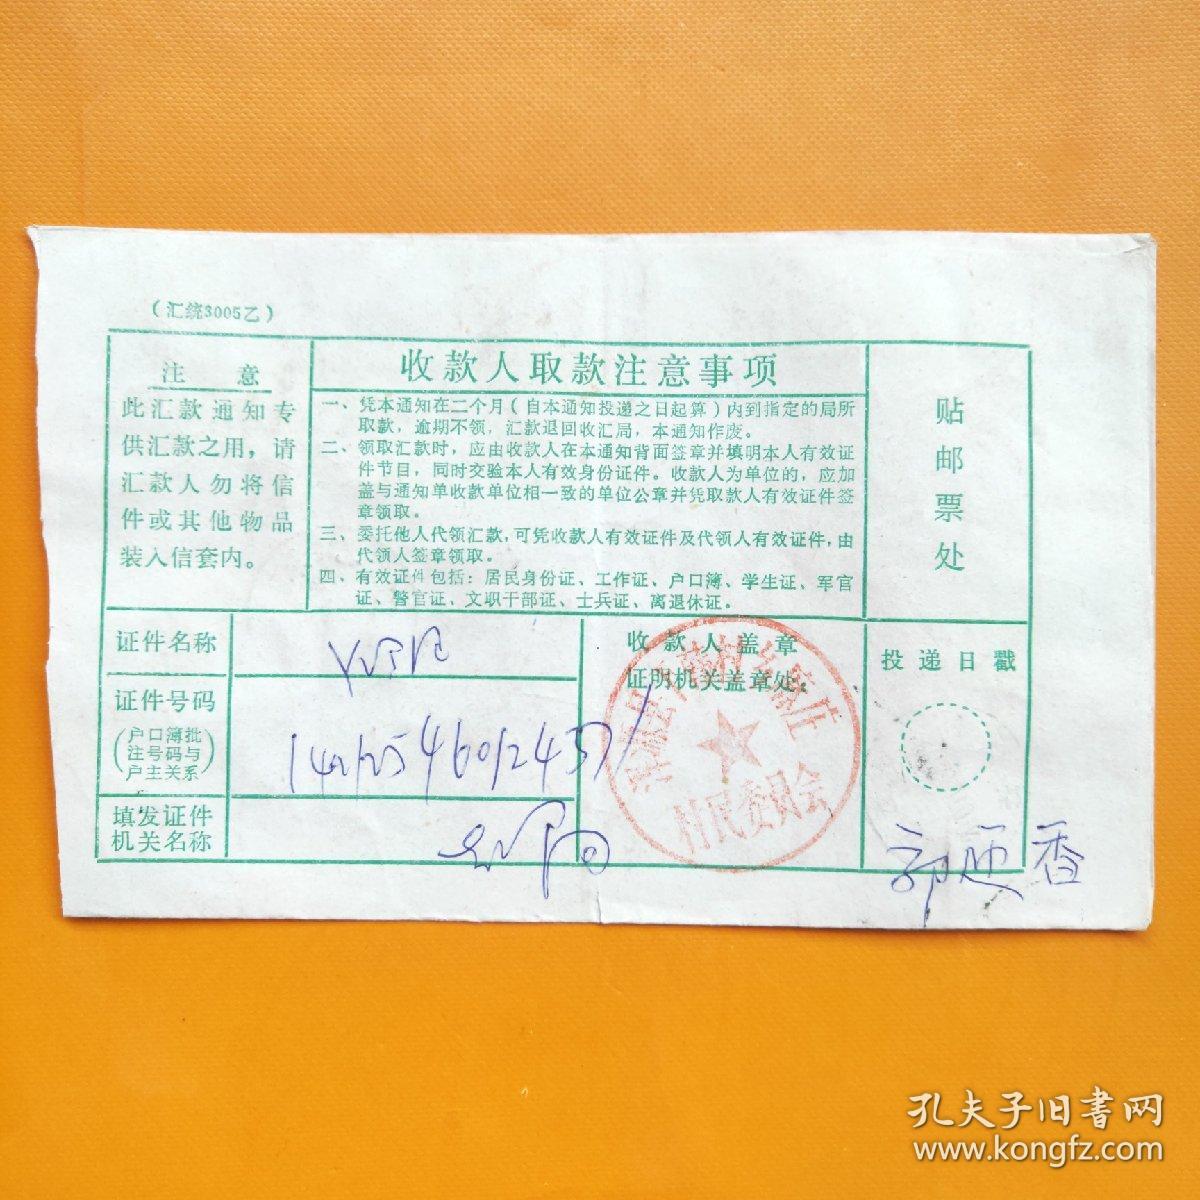 邮政汇款单dw4:2001年1月17日北京（九龙山邮政日戳）寄山西浑源汇款单